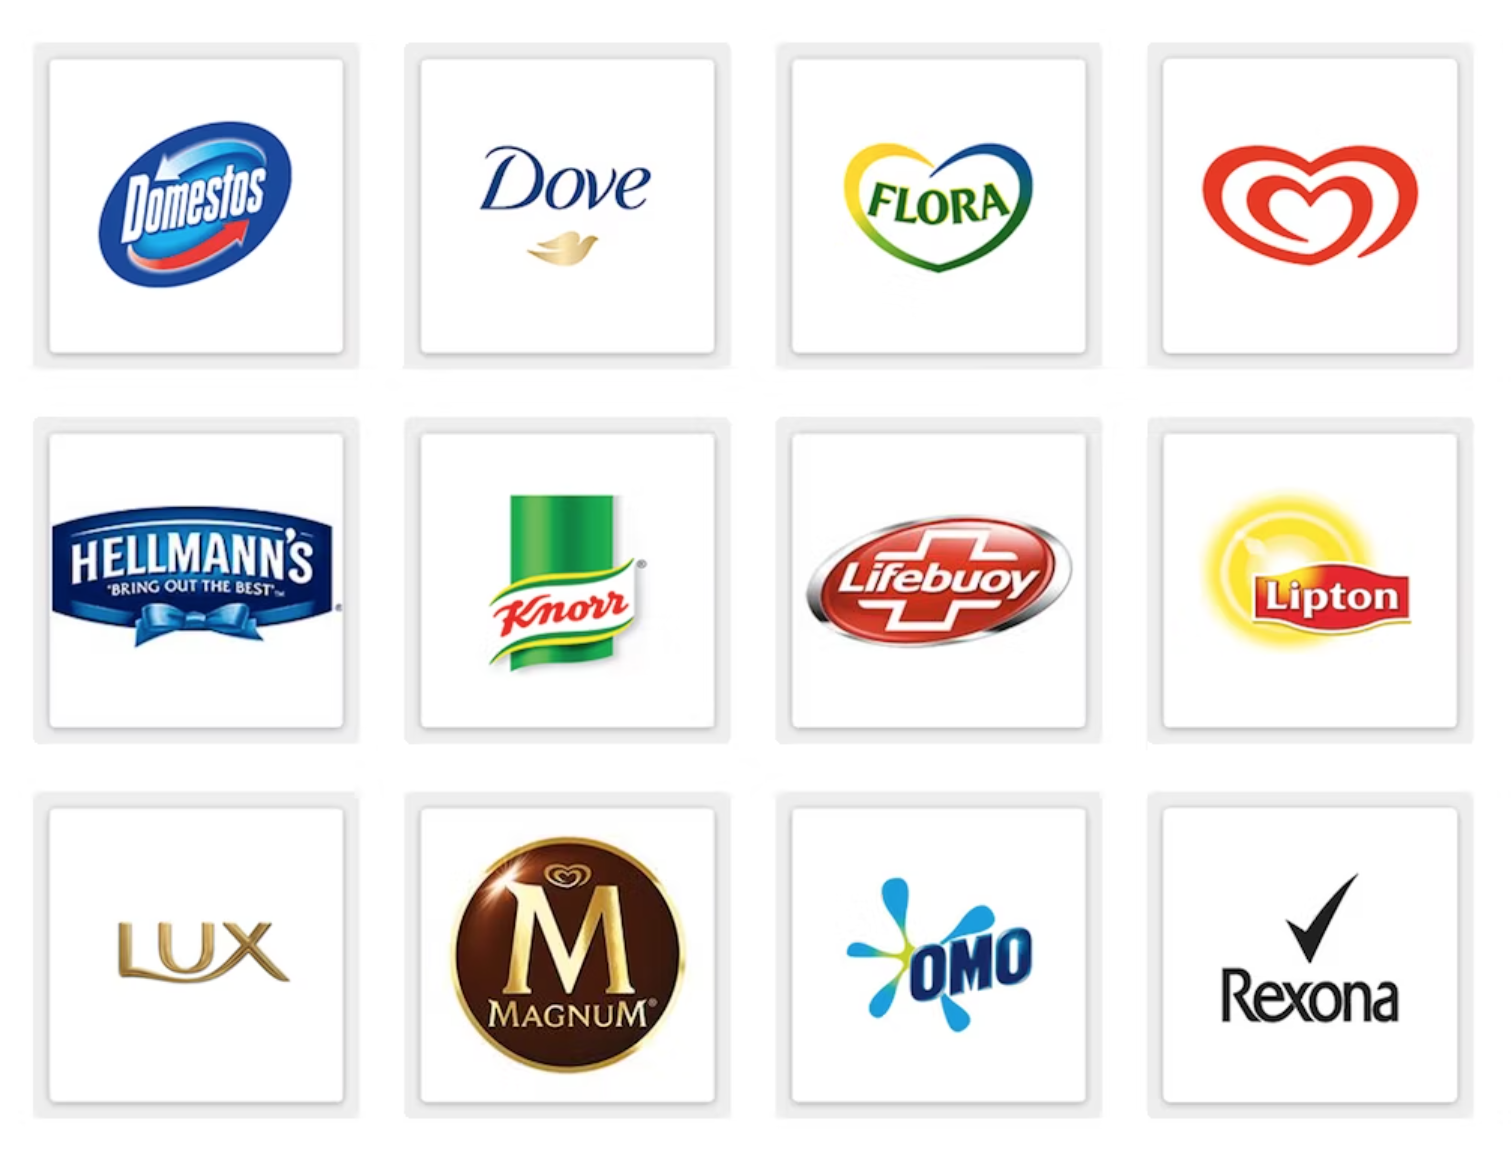 Логотипы известных брендов Unilever. Источник: MarketingWeek